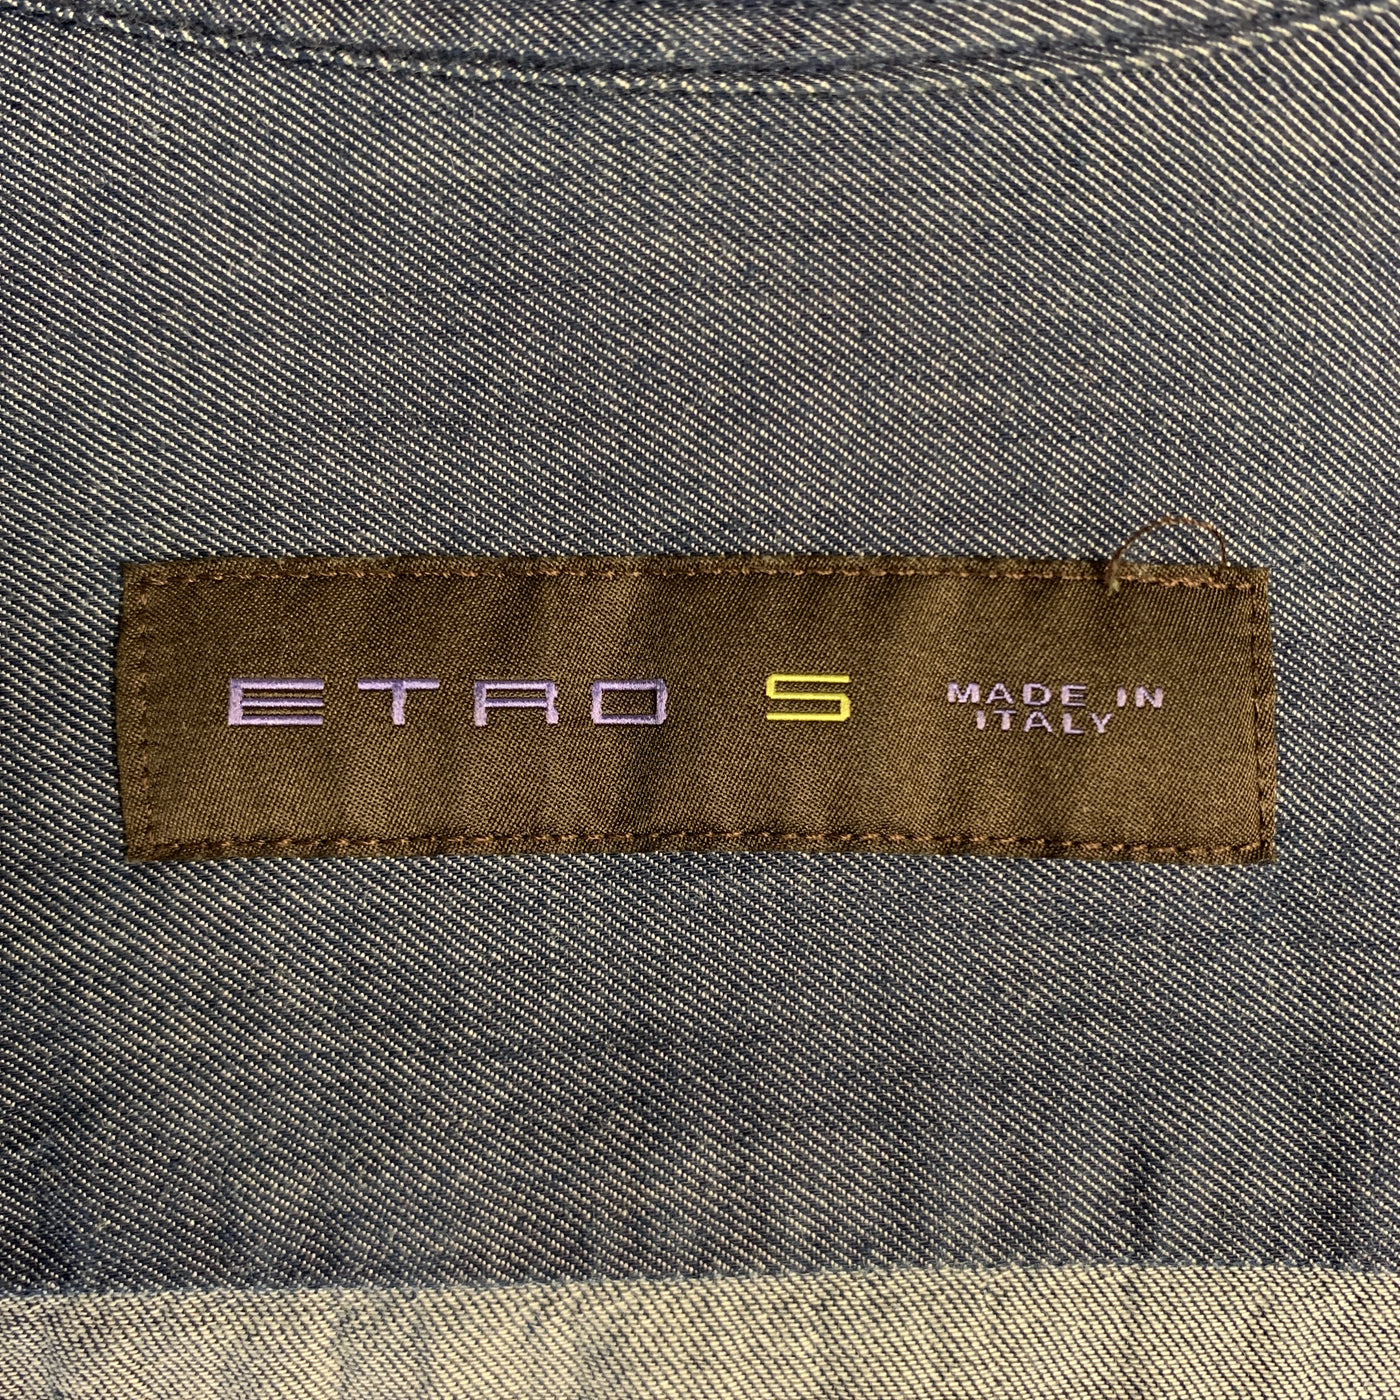 ETRO Size S Indigo Cotton Button Up Spread Collar Long Sleeve Shirt